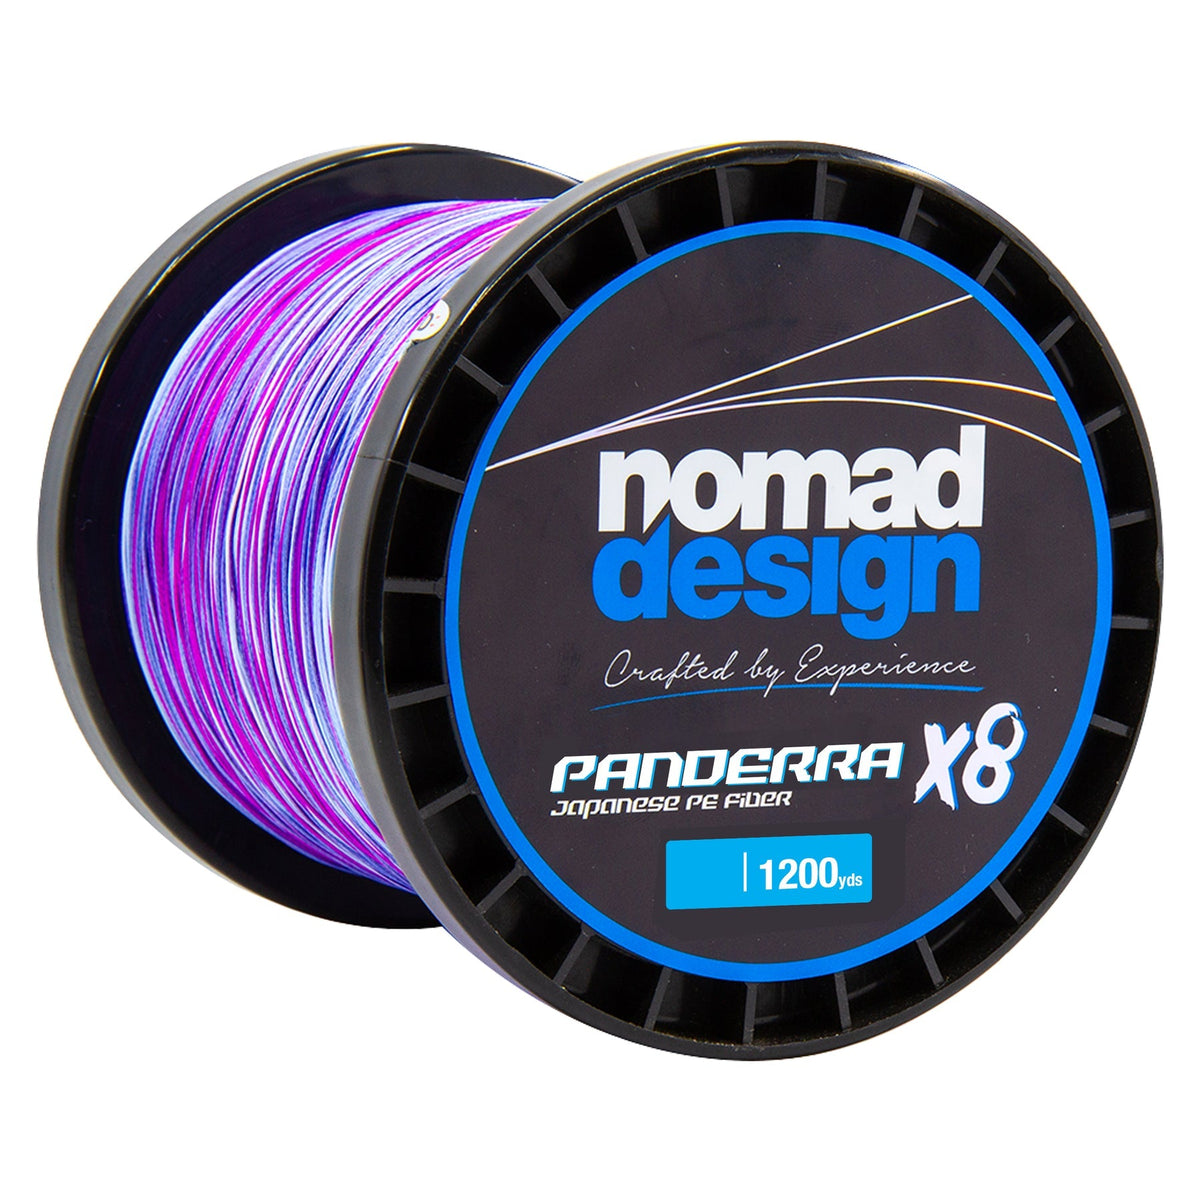 Buy 1 NOMAD Panderra X8 Braid Get 1 FREE